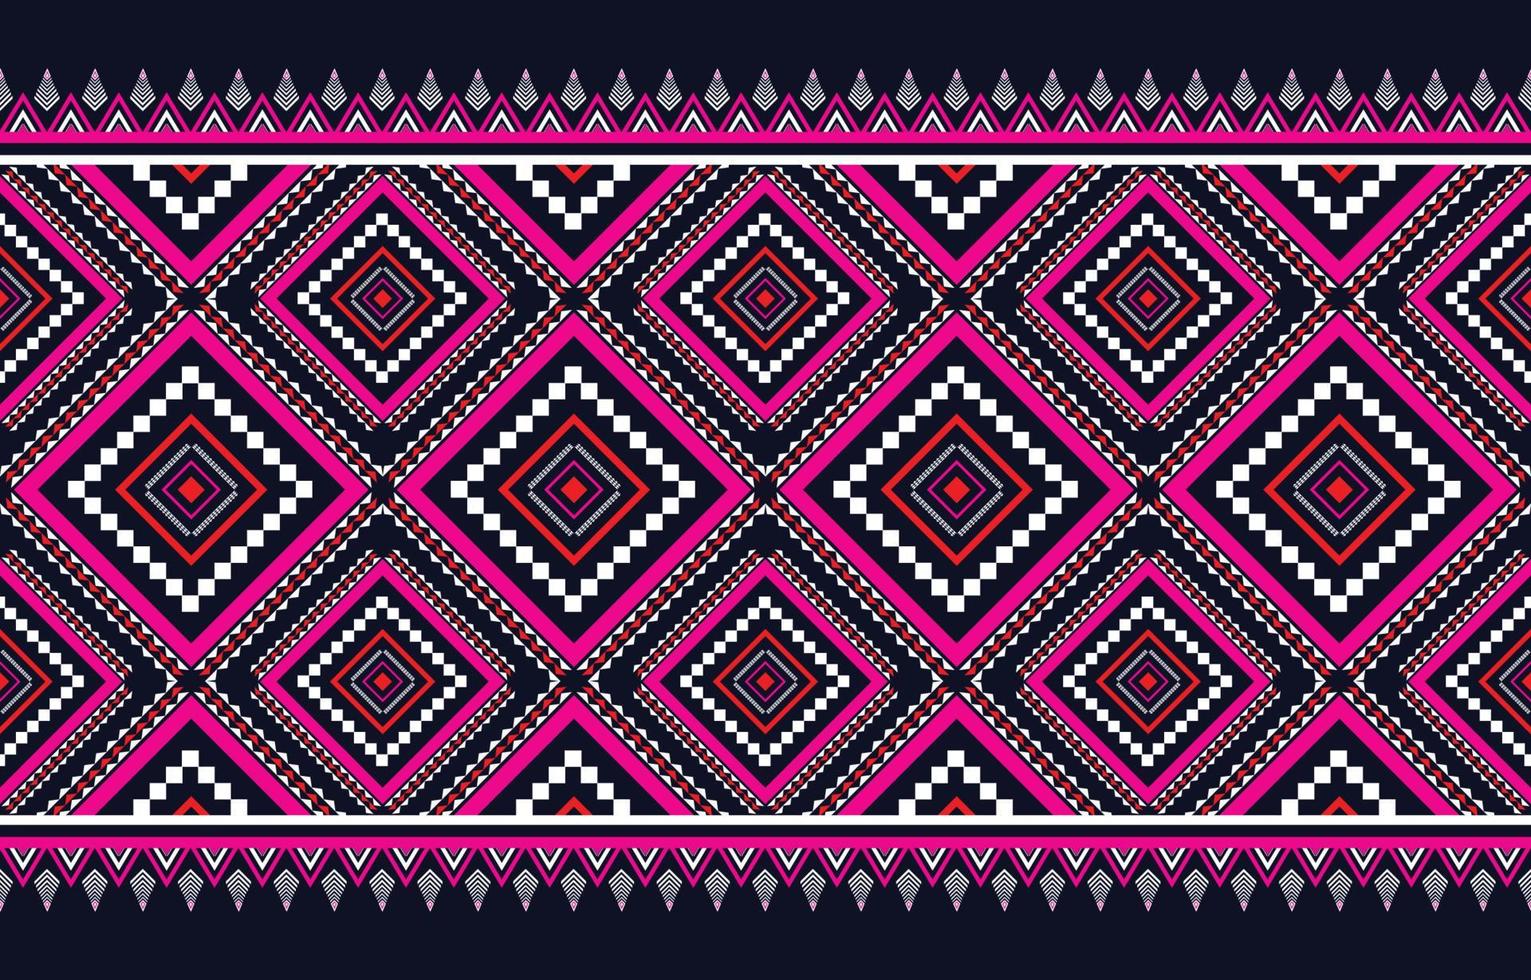 motivi geometrici etnici tribali tradizionali indigeni. design per sfondo, tappeto, carta da parati, vestiti, avvolgere, batik, illustrazione vettoriale in stile ricamo